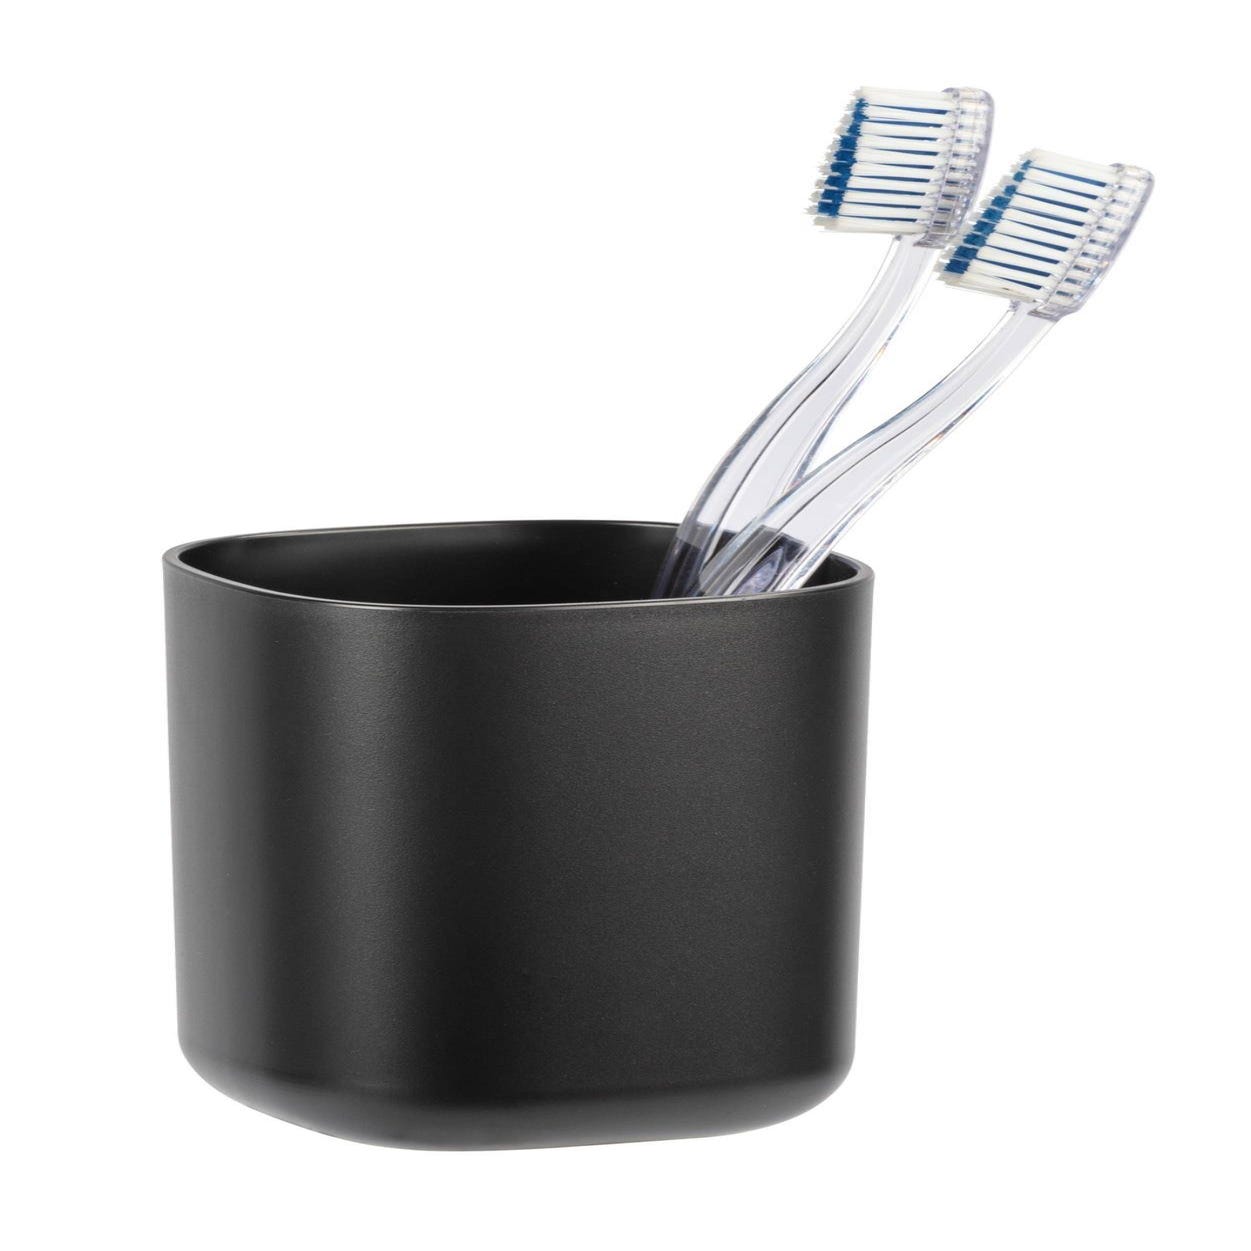 Vaso para cepillos de dientes Barock - R; 3697 / / Wenko — Comercial  Marciense